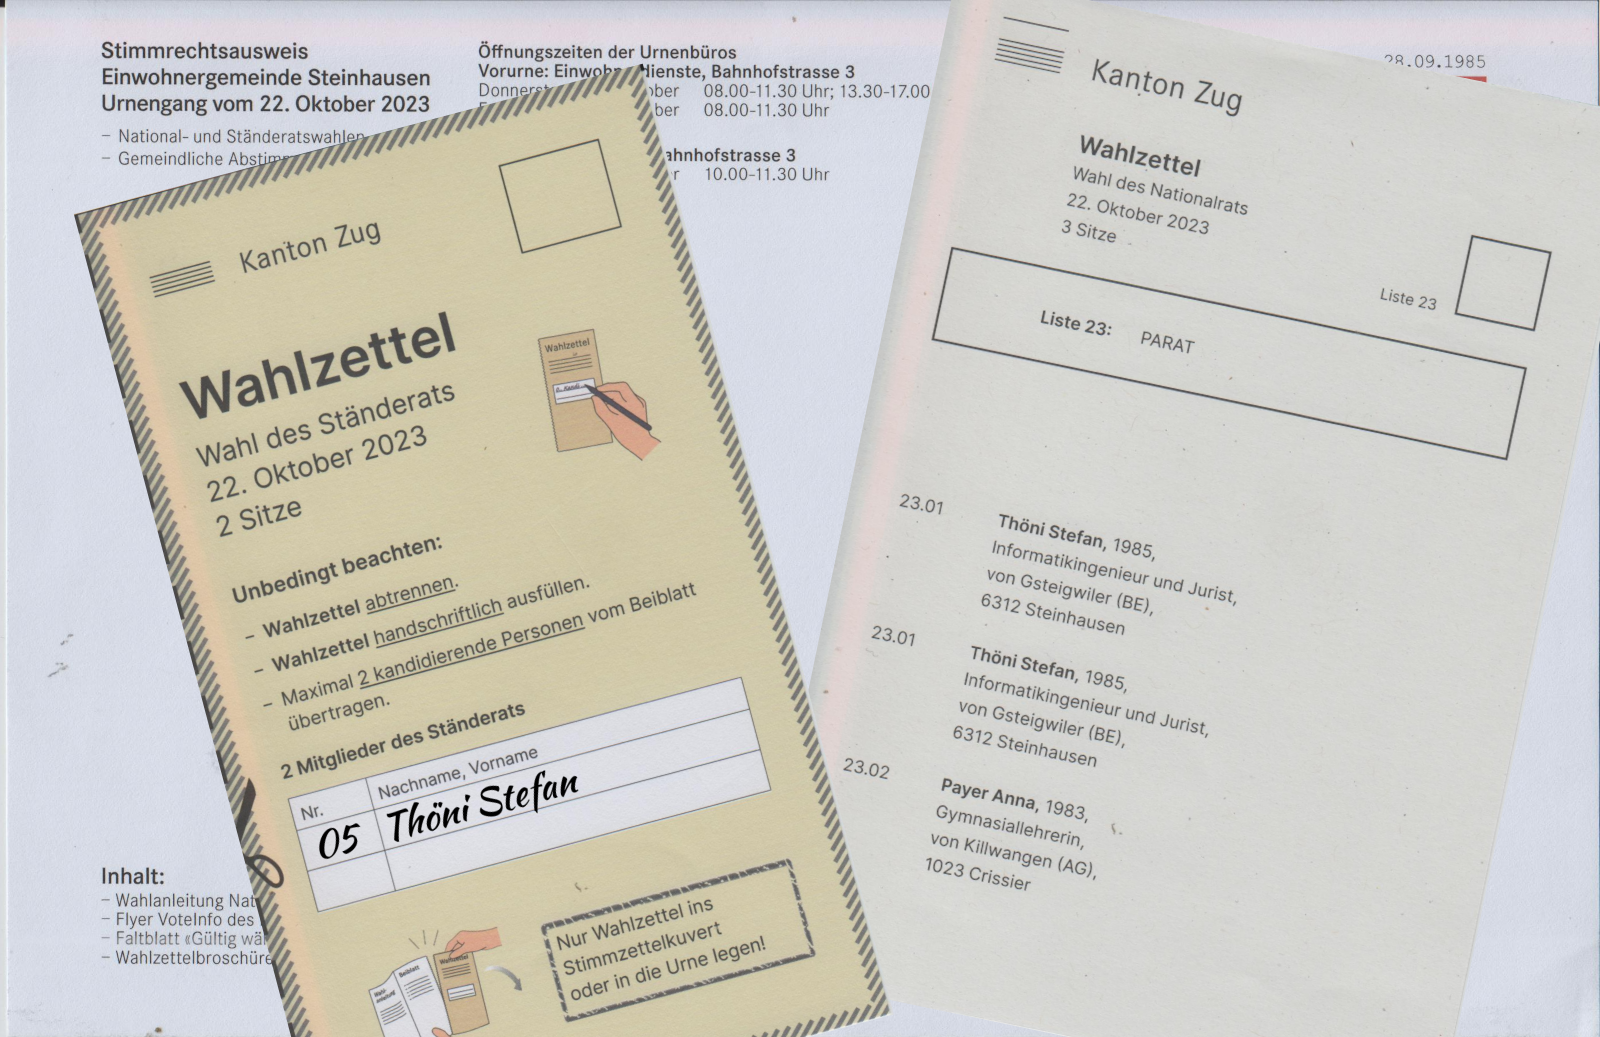 Im Hintergrund ein Stimmrechtsausweis, im Vordergrund die Wahlzettel für die Nationalratswahl für die PARAT und für die Ständeratswahl für Stefan Thöni